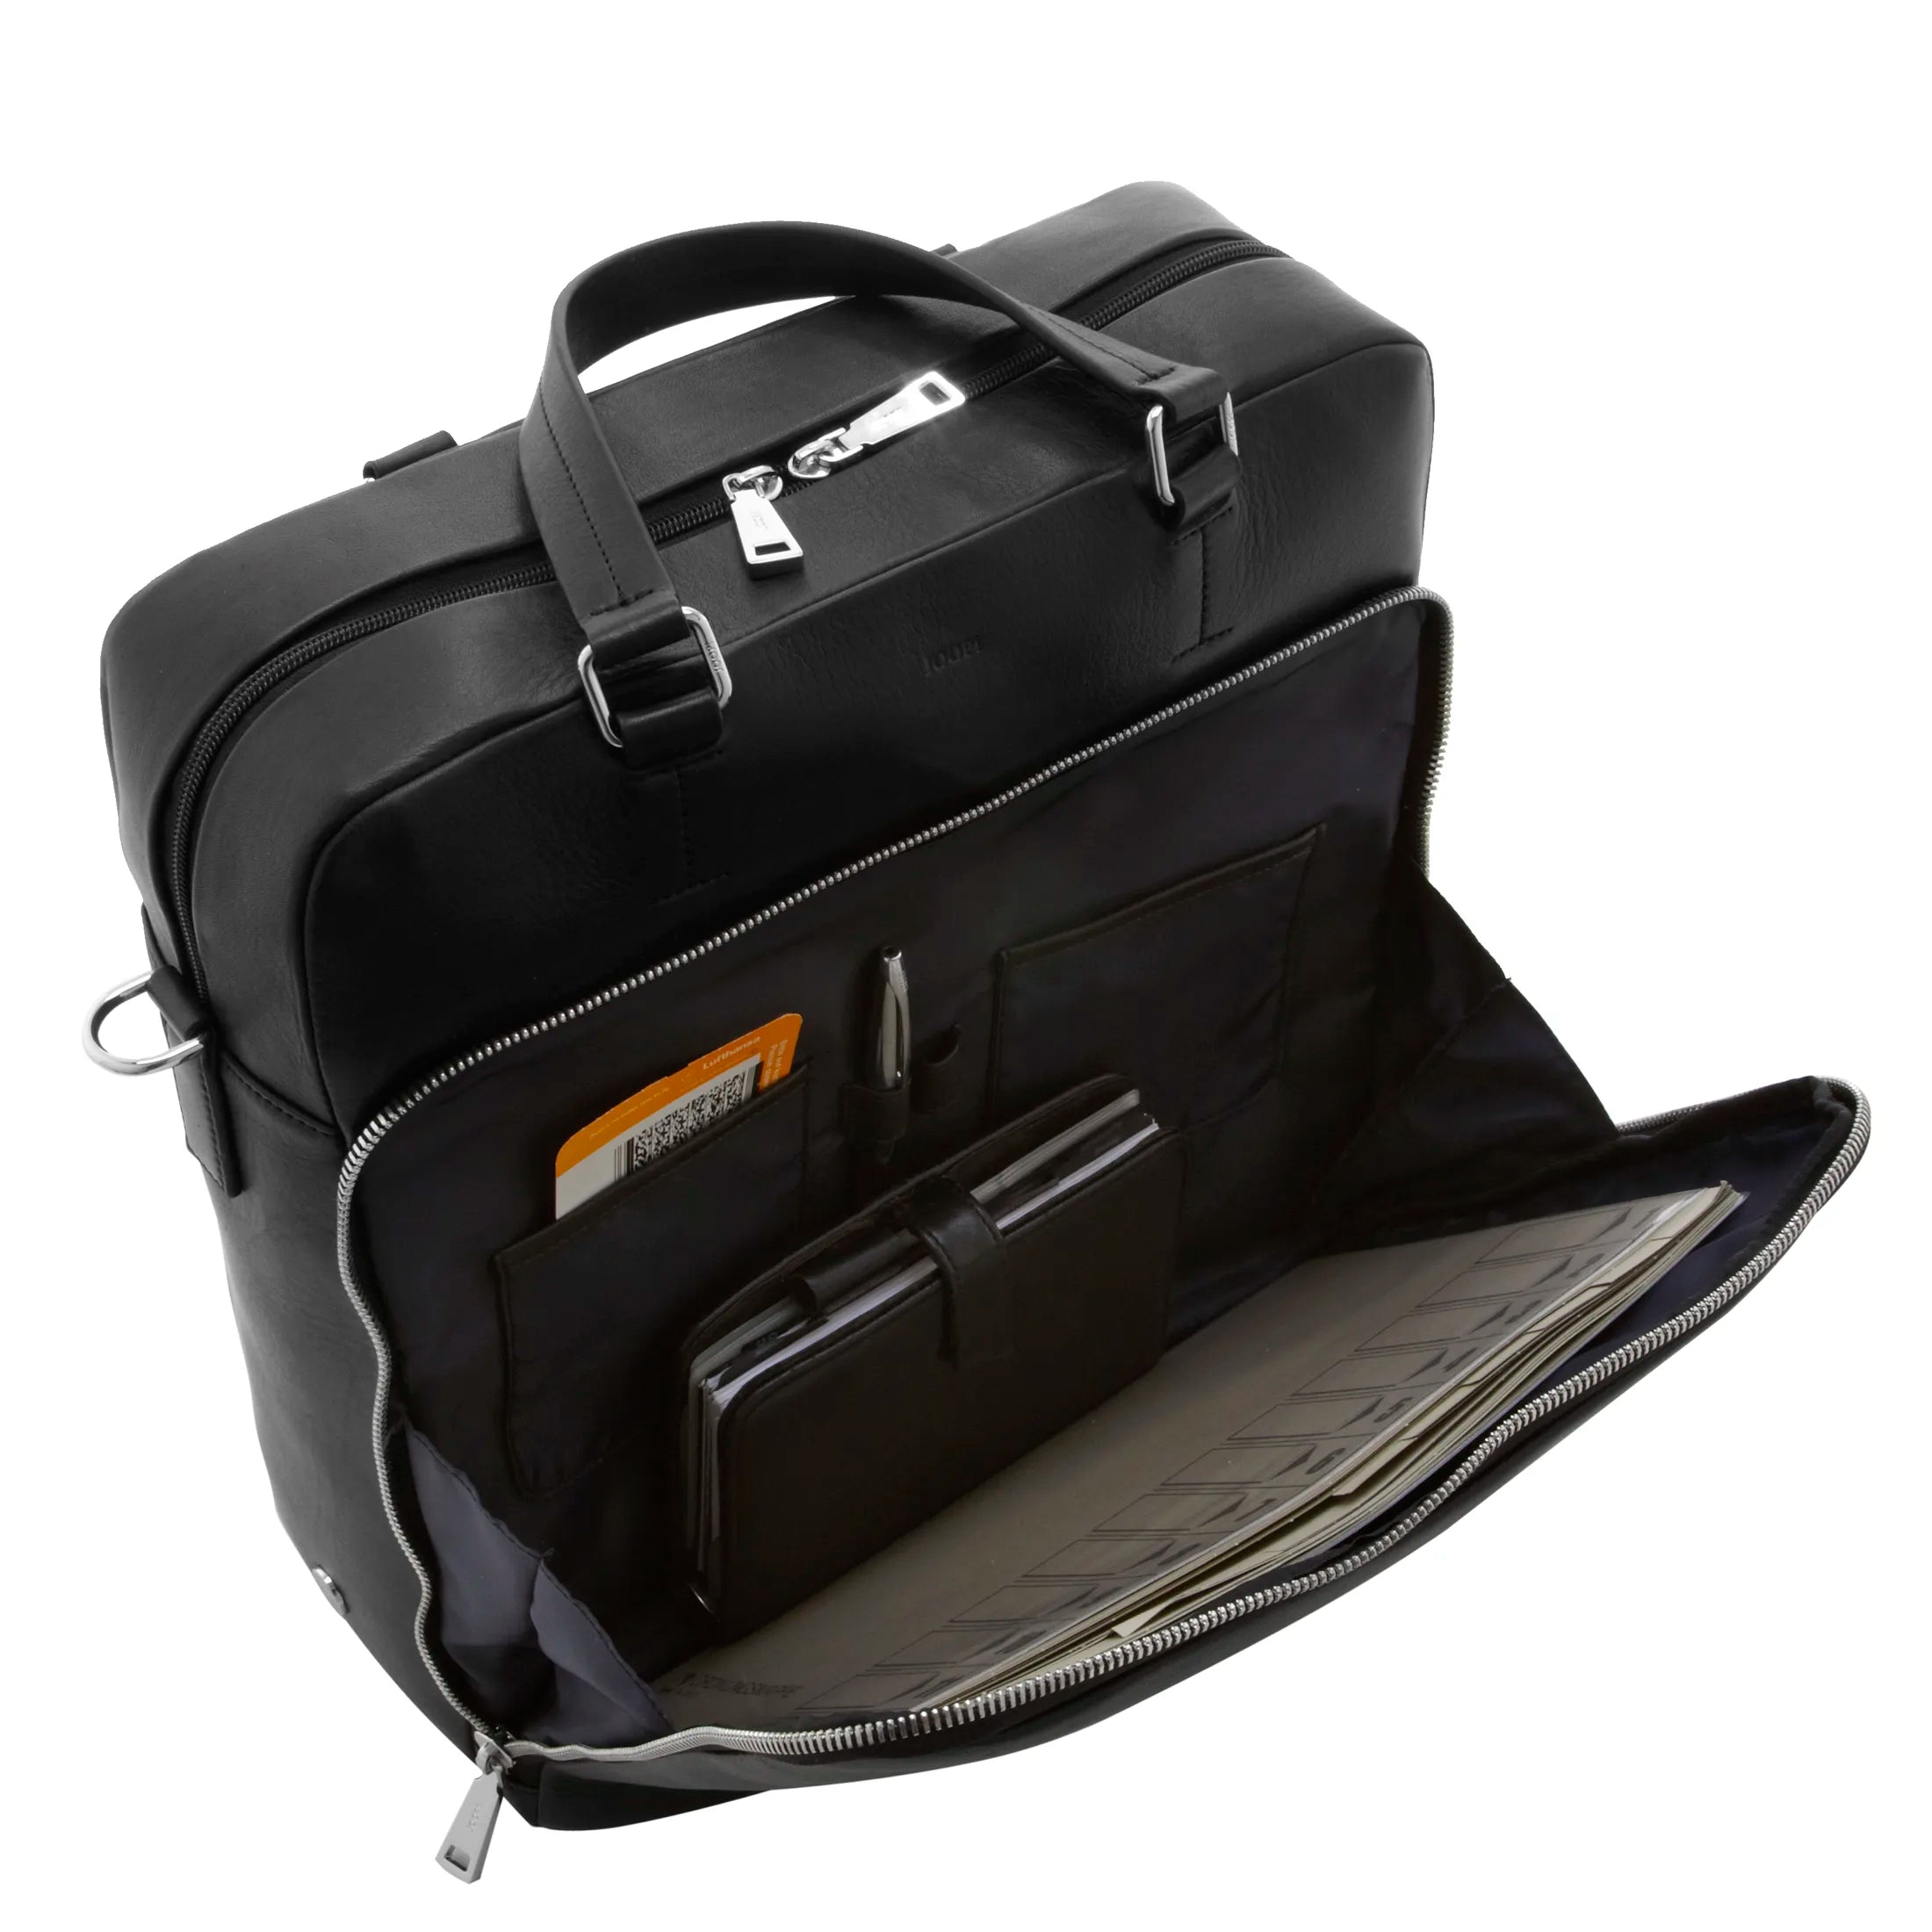 Joop Soft Leather Sinon Briefbag Sac pour ordinateur portable 40 cm - noir